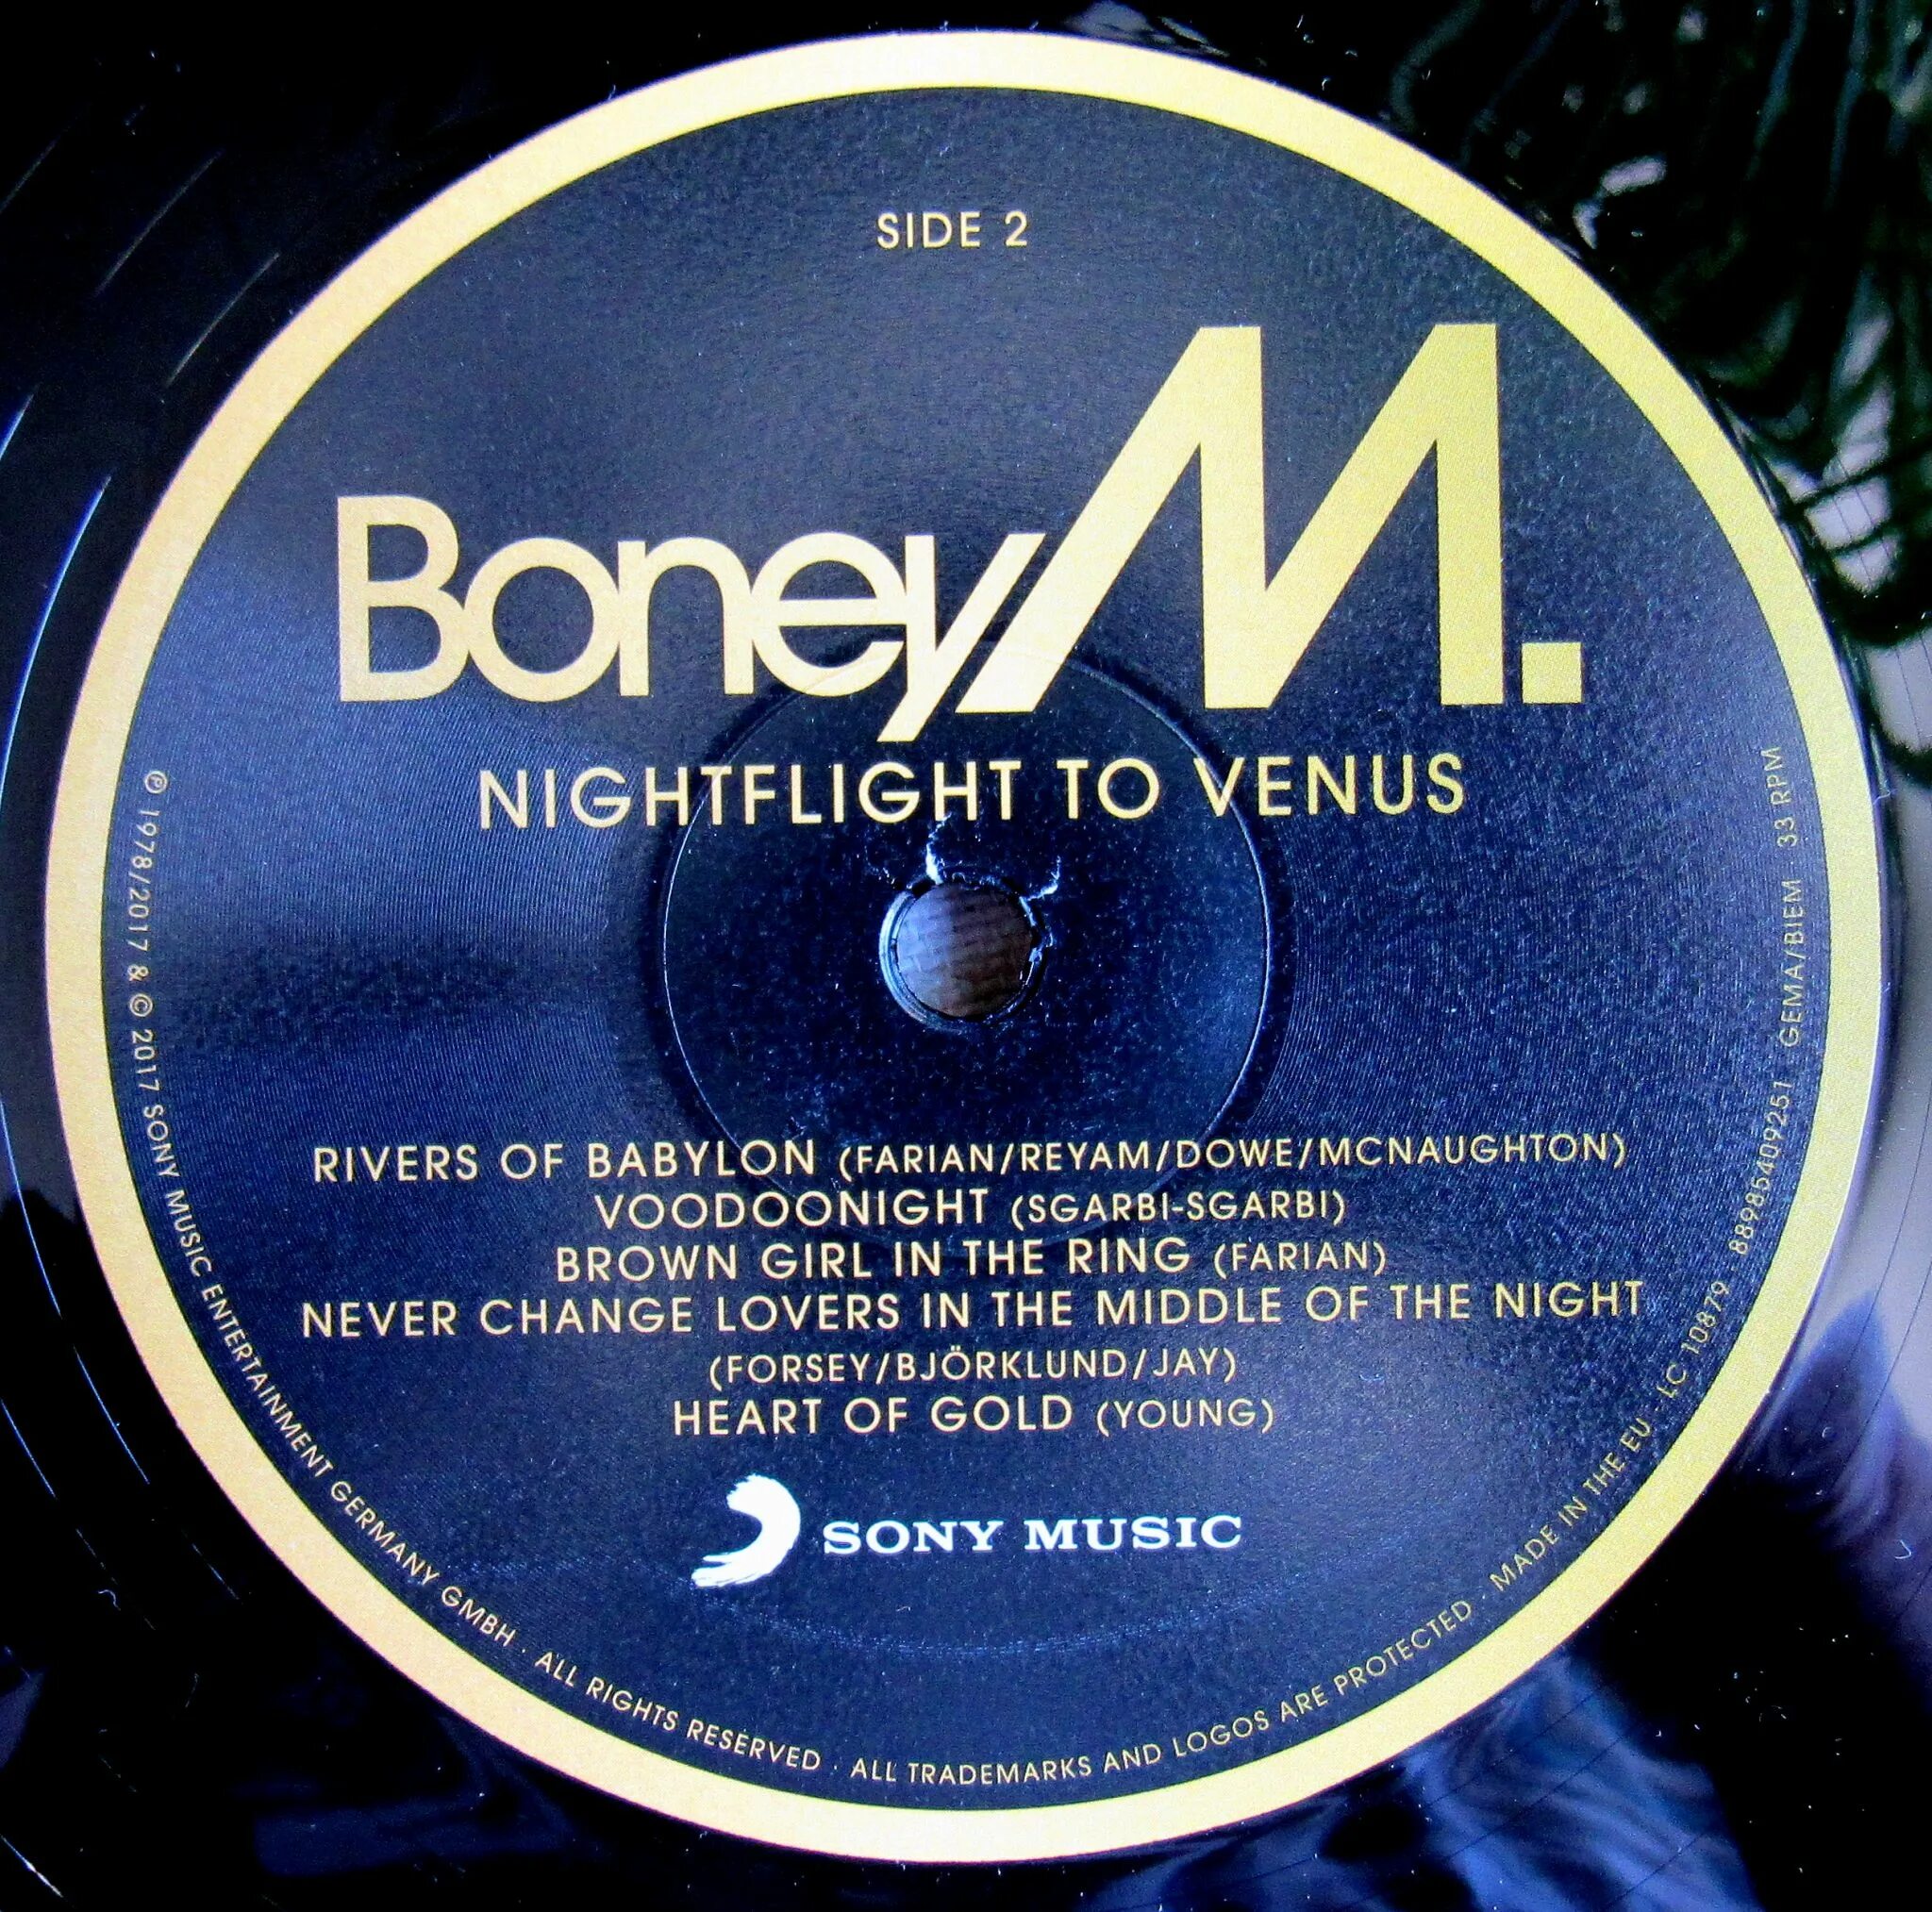 1978 - Nightflight to Venus. Пластинка Boney m Nightflight to Venus. Boney m Nightflight to Venus 1978. 0889854092511, Виниловая пластинка Boney m., Nightflight to Venus (0889854092511).